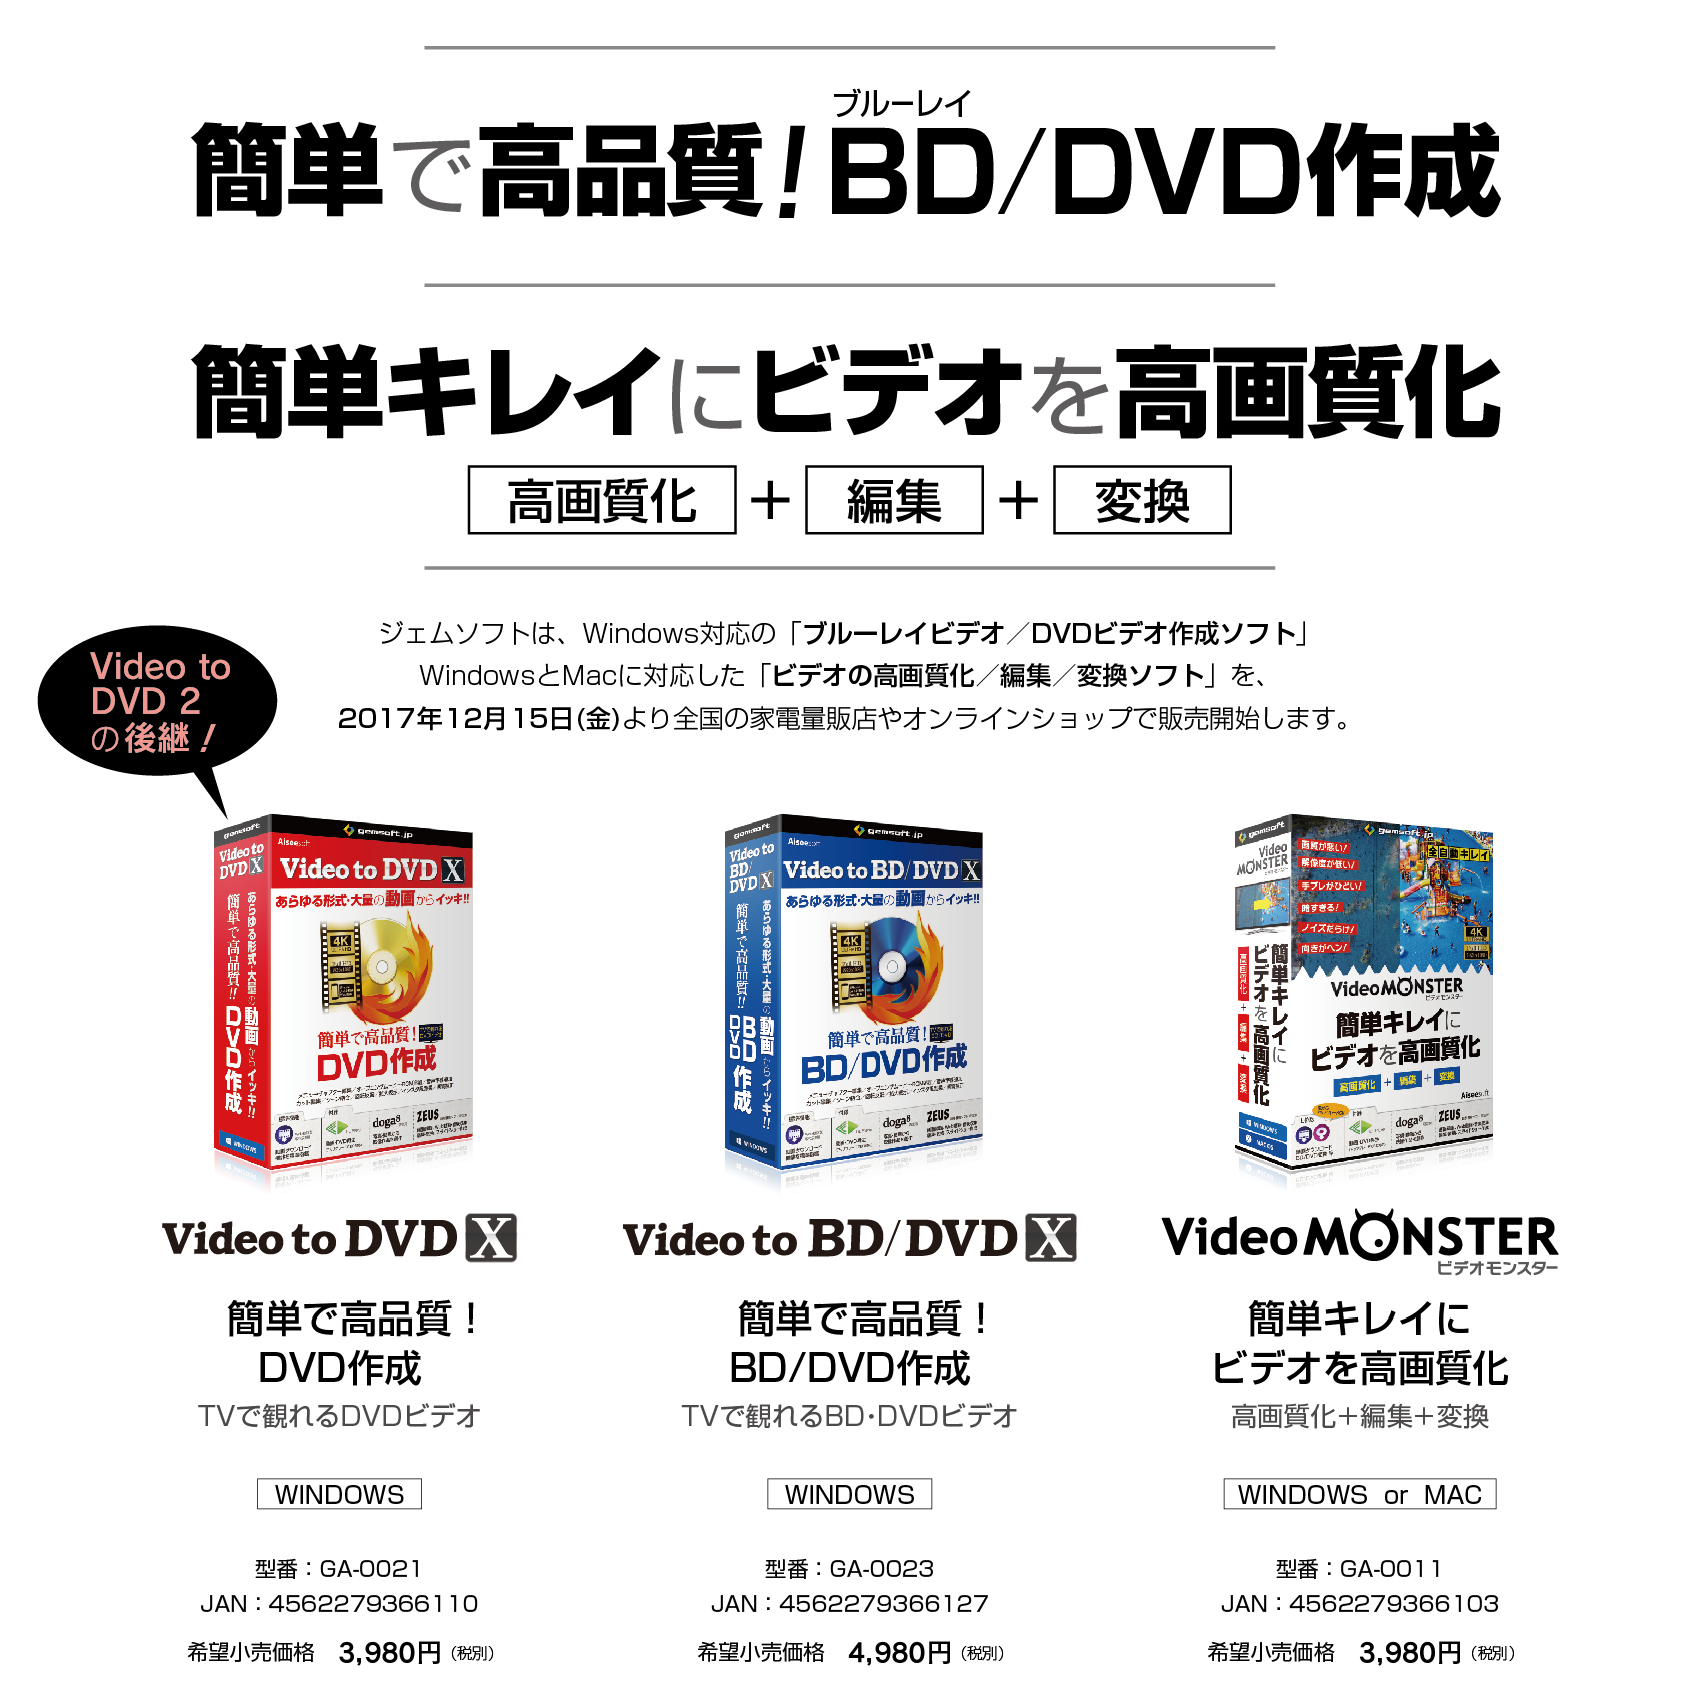 ジェムソフト2017年12月の新作 Video to DVD X、Video to BD/DVD X、Video MONSTER のご紹介